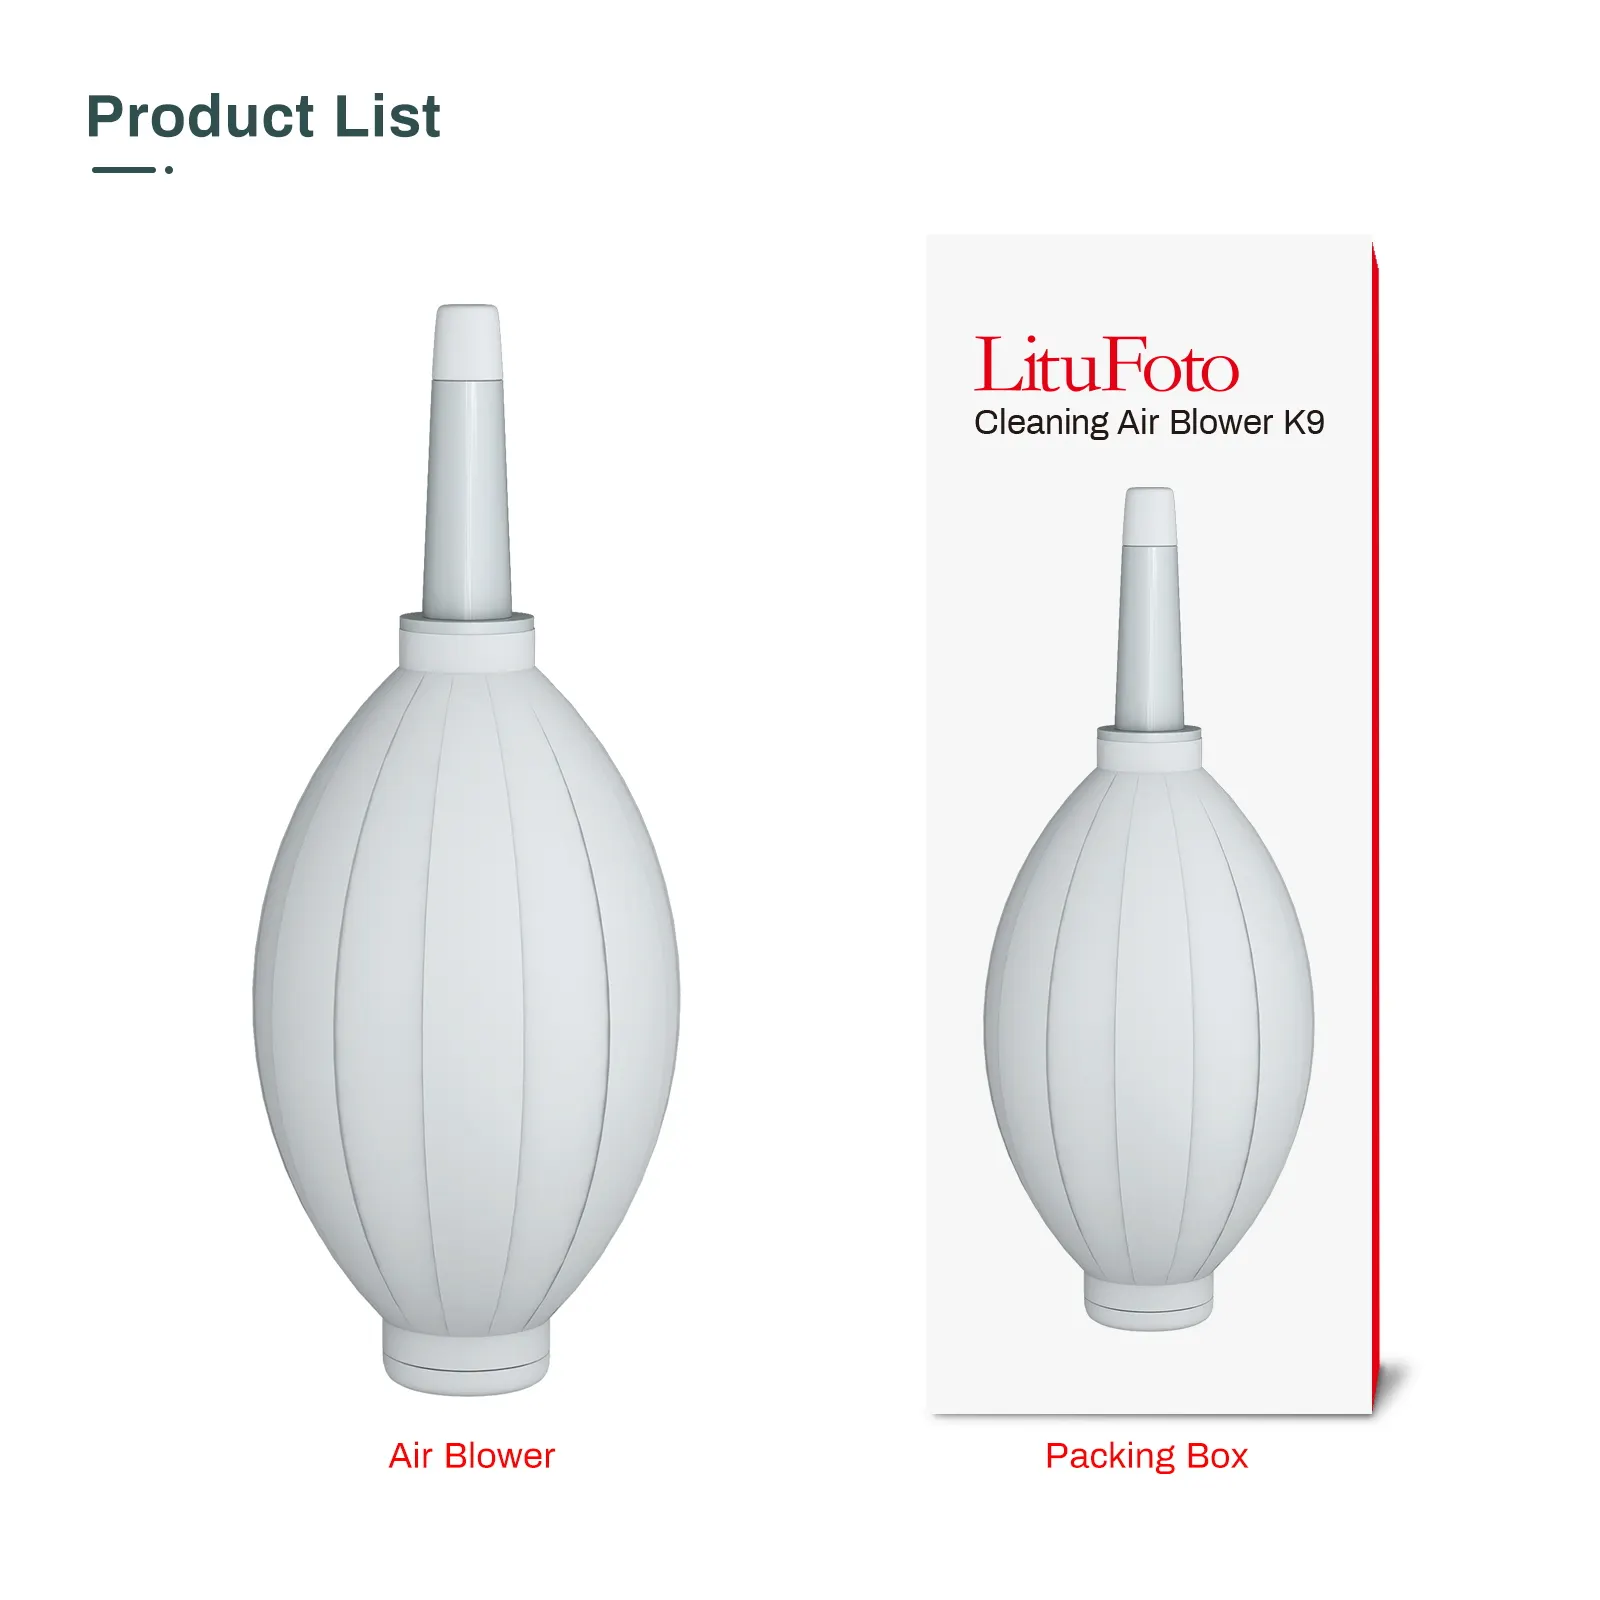 Насос LituFoto K9 для очистки от пыли, лампочка-воздуходувка для цифровых SLR-объективов, сенсорных ЖК-экранов, музыкальных инструментов, клавиатур